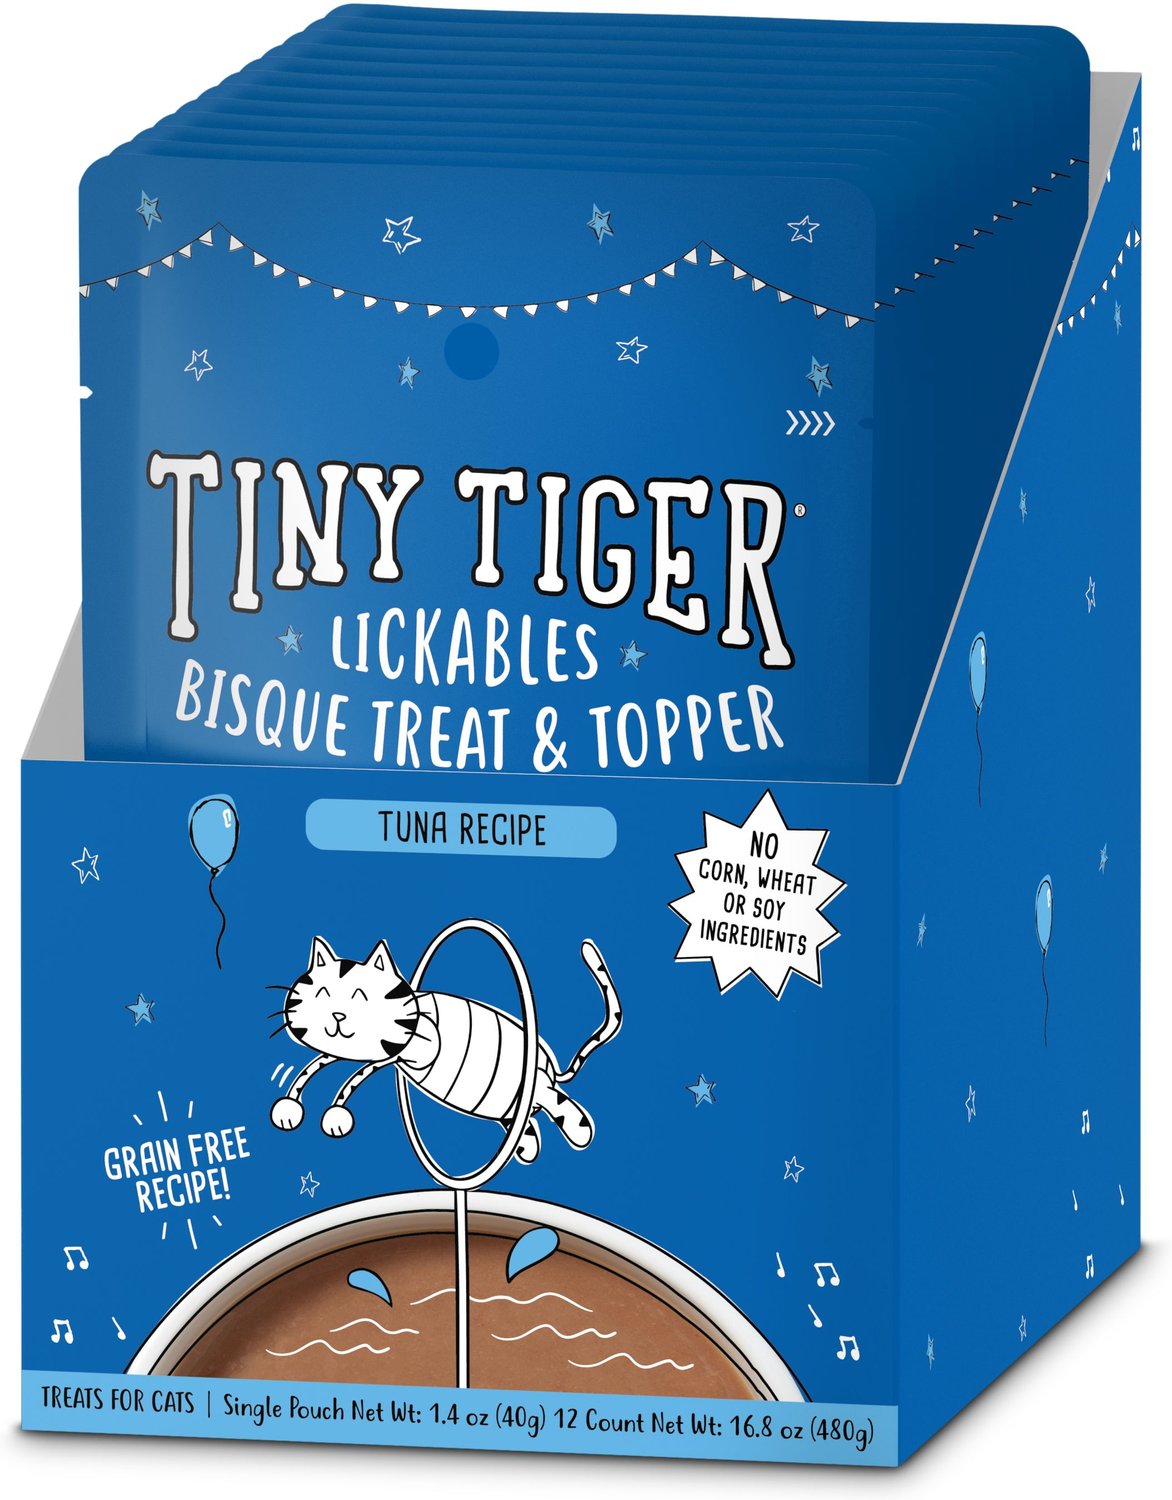 Tiny Tiger Lickables, Receta de atún, Bisque Cat Treat y Topper